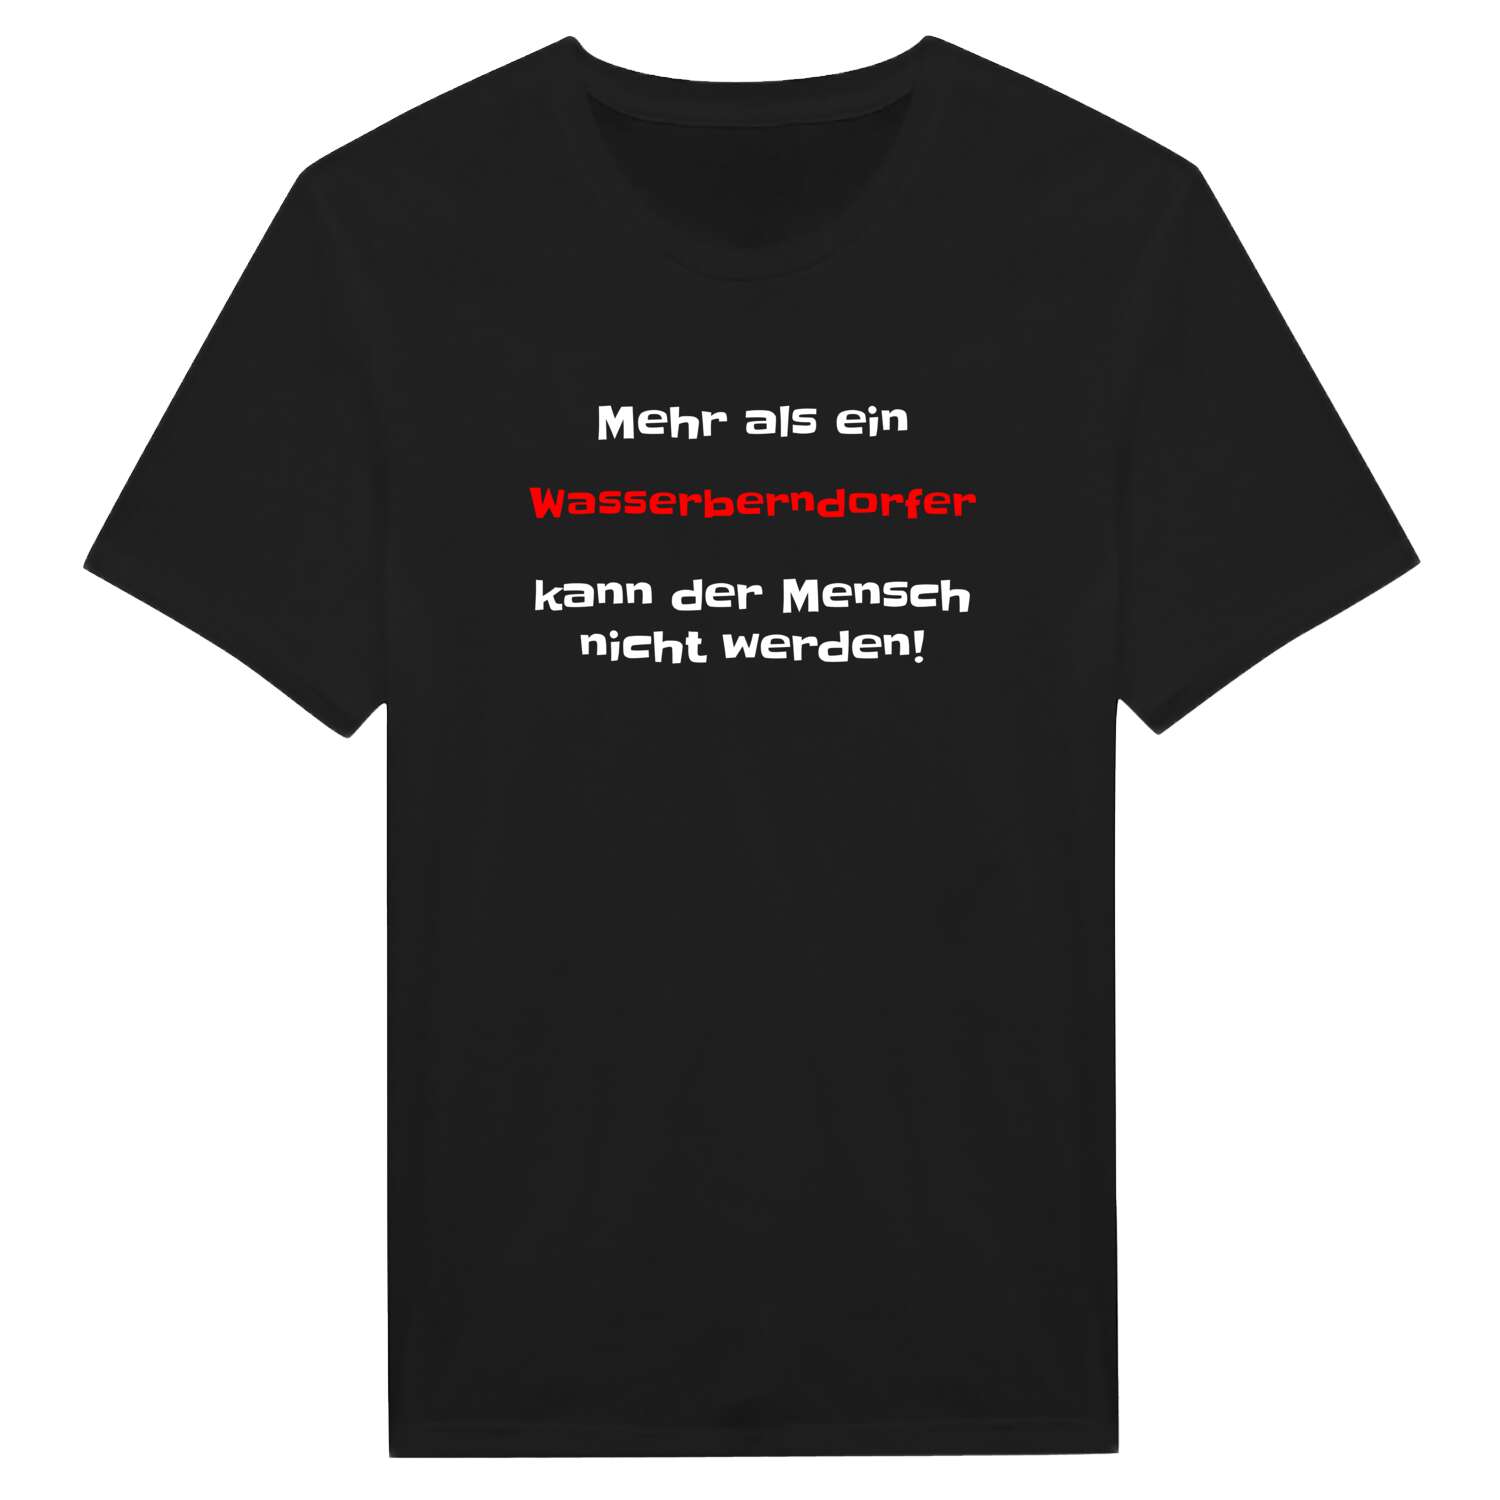 Wasserberndorf T-Shirt »Mehr als ein«